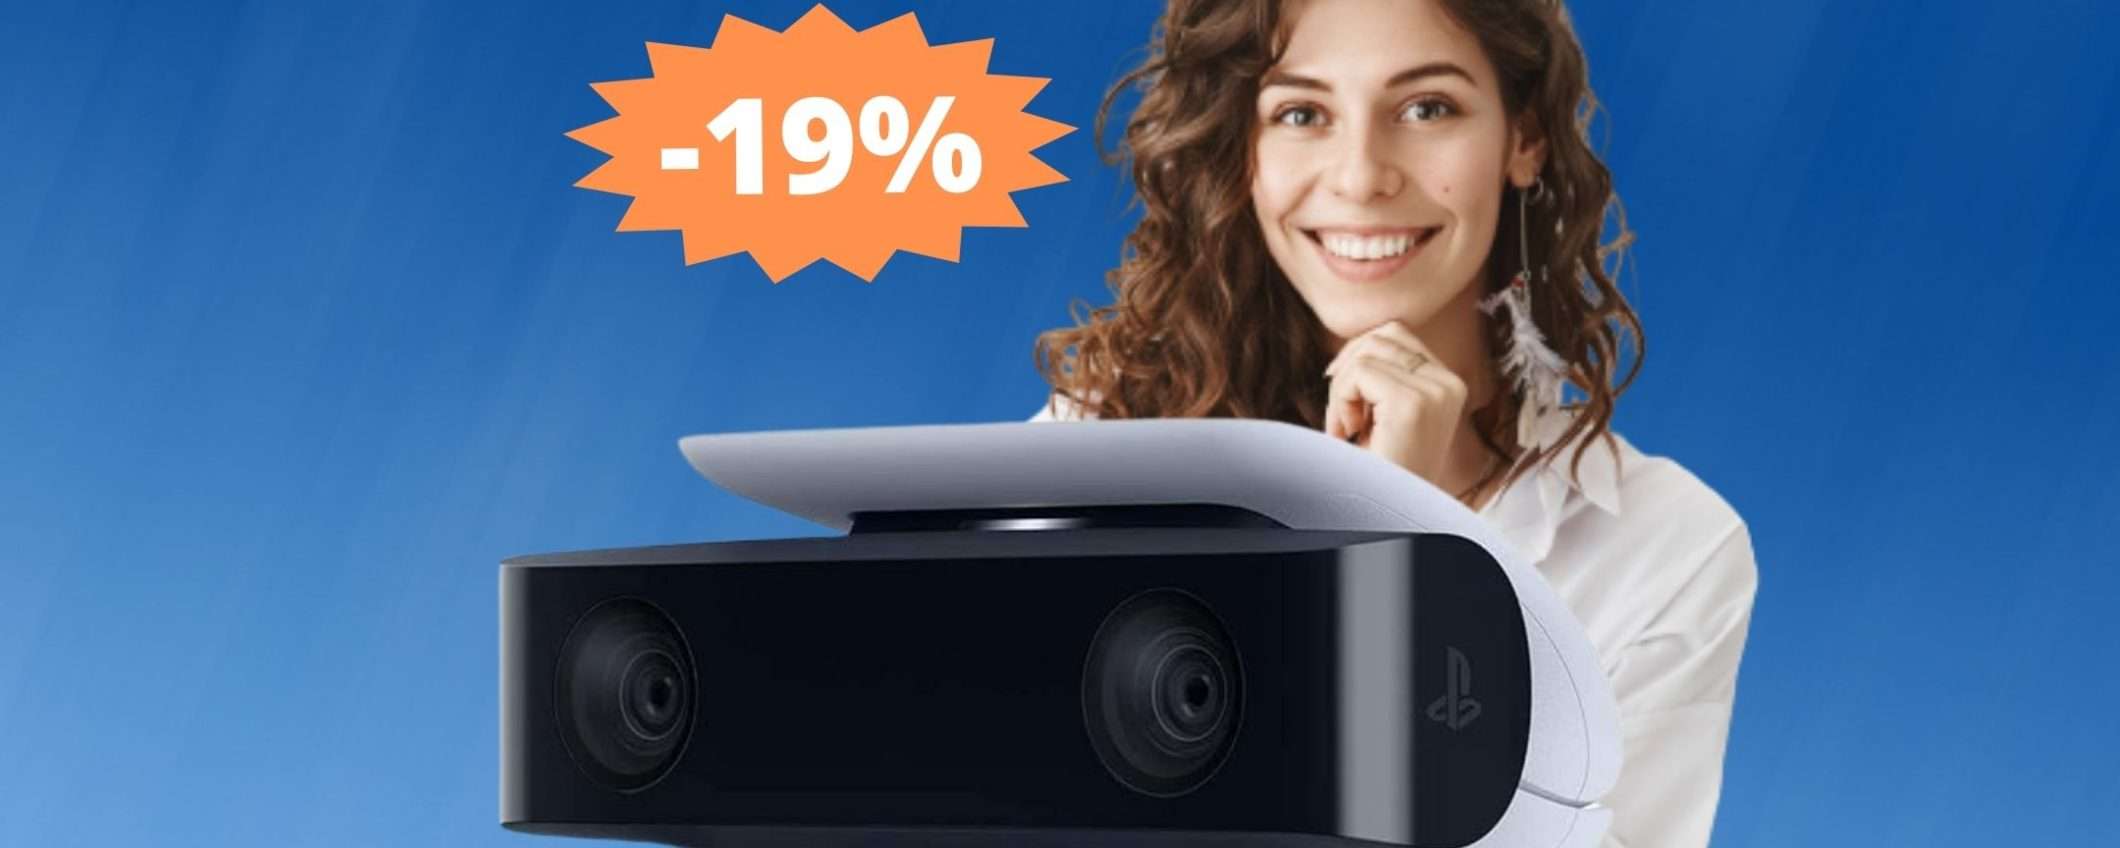 Camera HD PlayStation 5: un'OCCASIONE imperdibile (-19%)